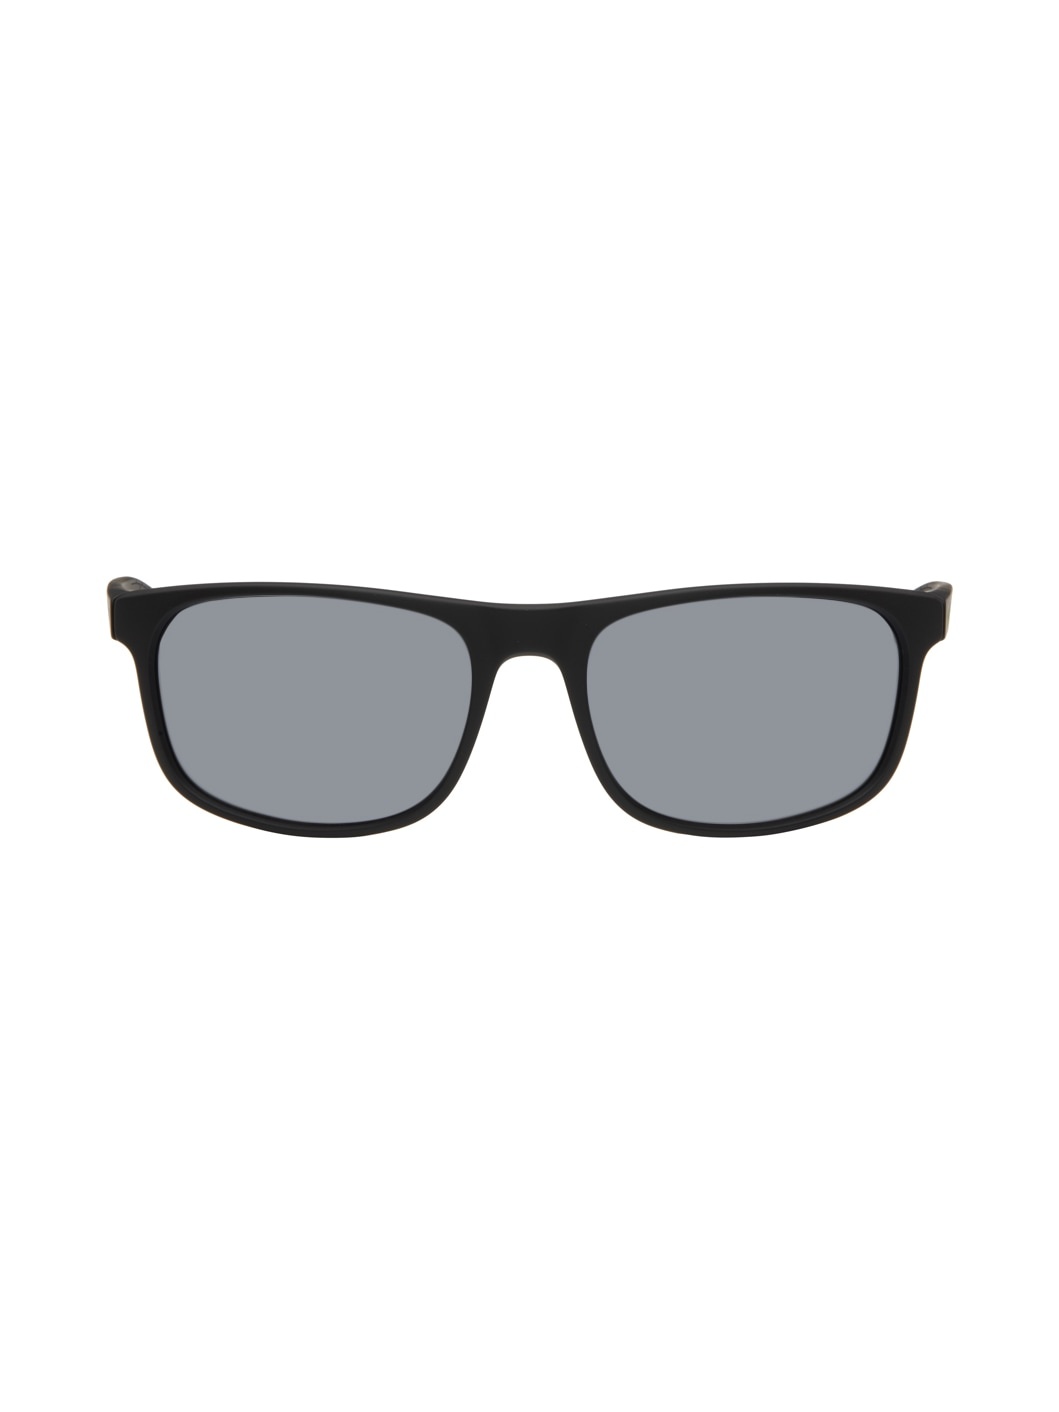 Black Endure Sunglasses - 1